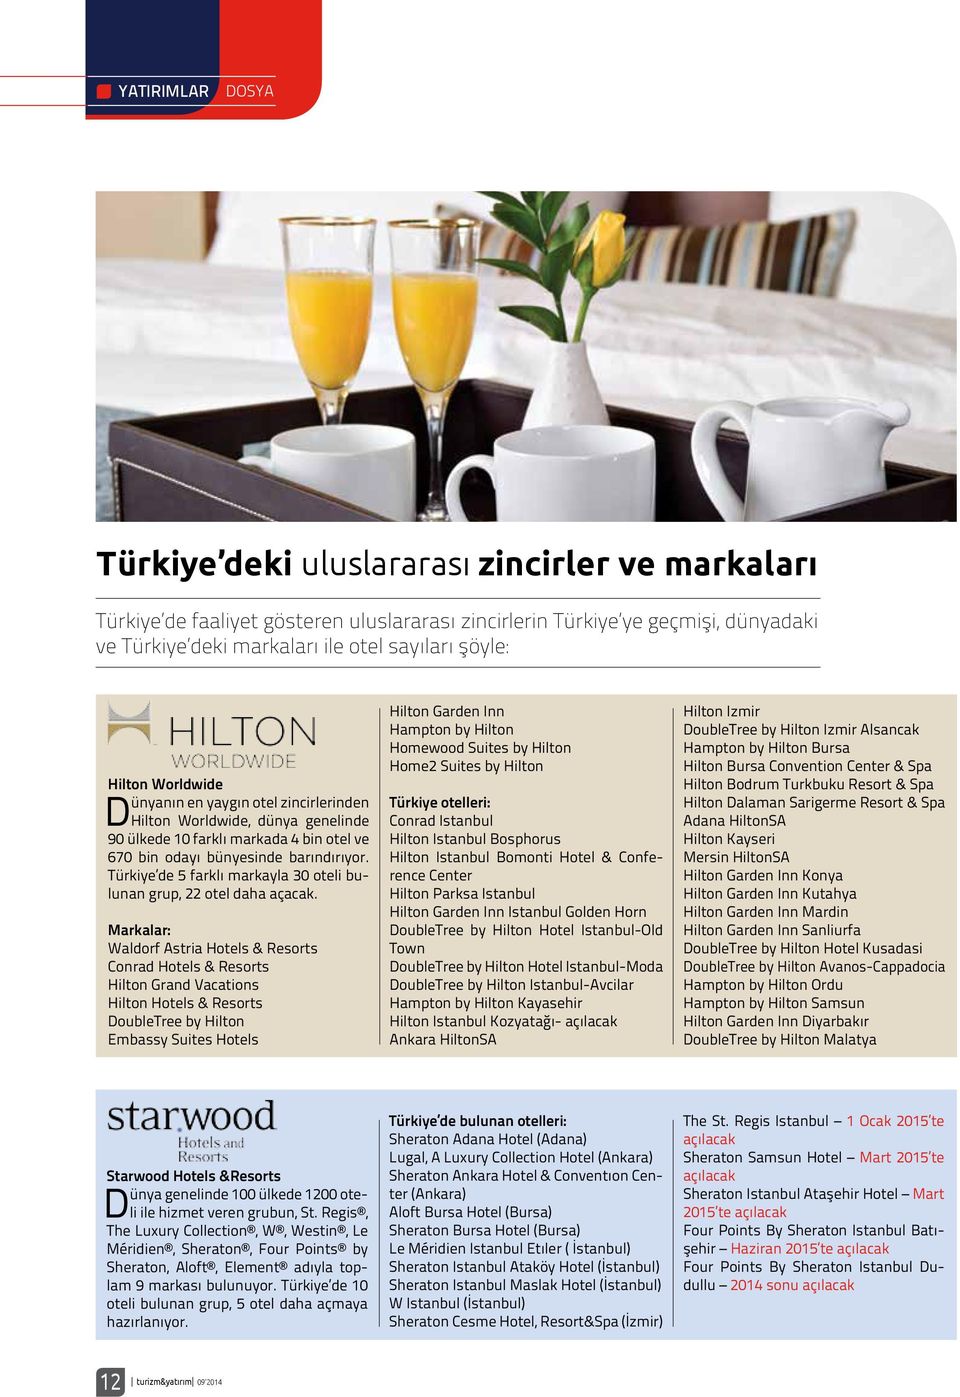 Türkiye de 5 farklı markayla 30 oteli bulunan grup, 22 otel daha açacak.